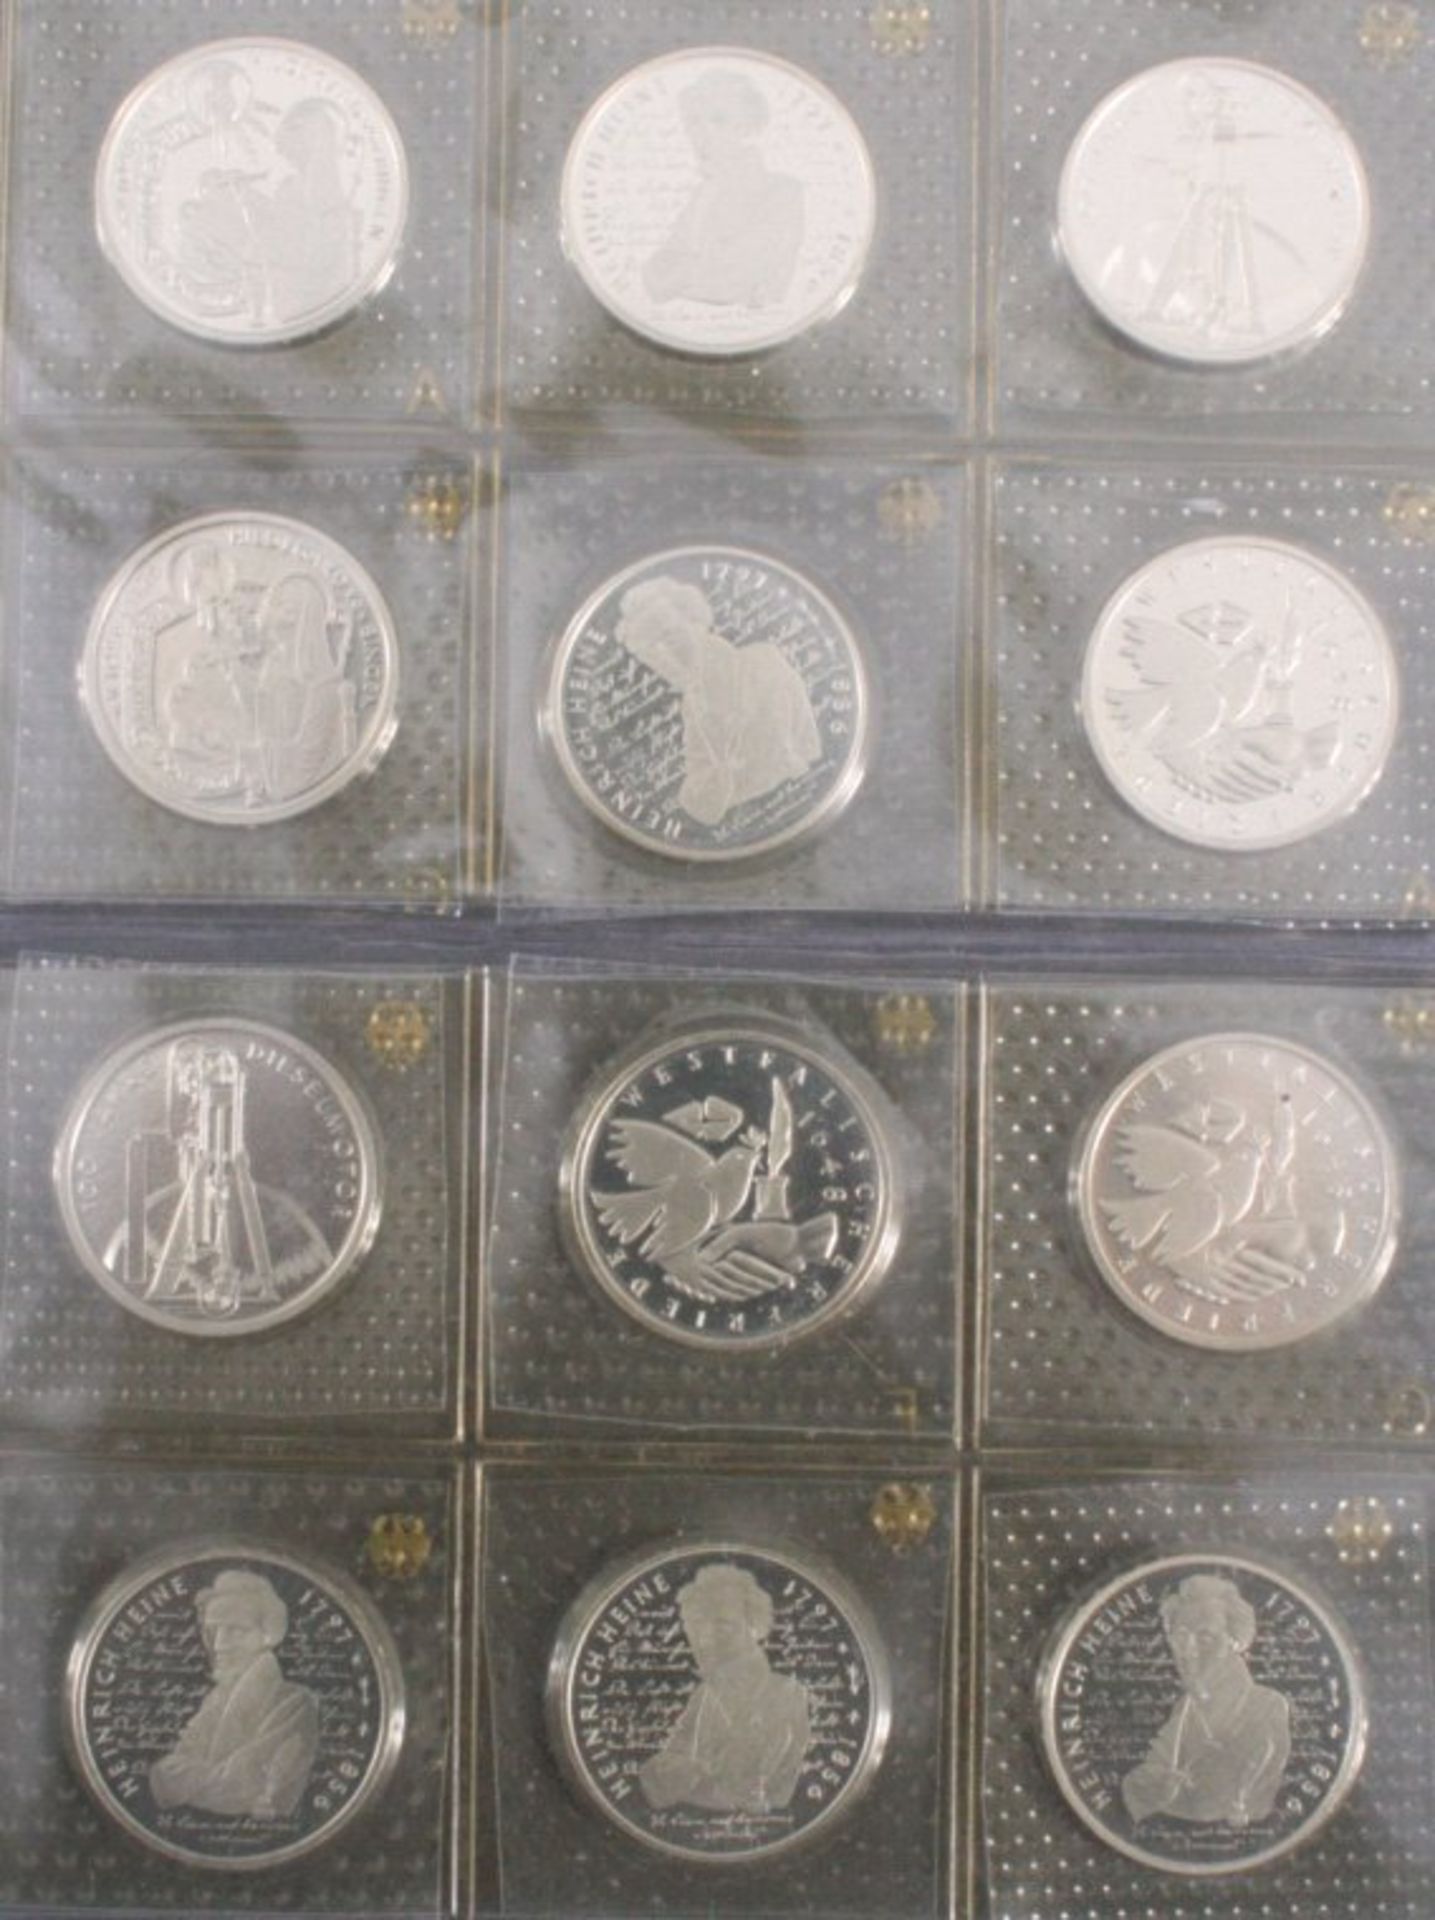 12 x 10 DM Gedenkmünzen pp orginal verschweißt2 x Hildegard von Bingen3 x westfälischer Frieden2 x